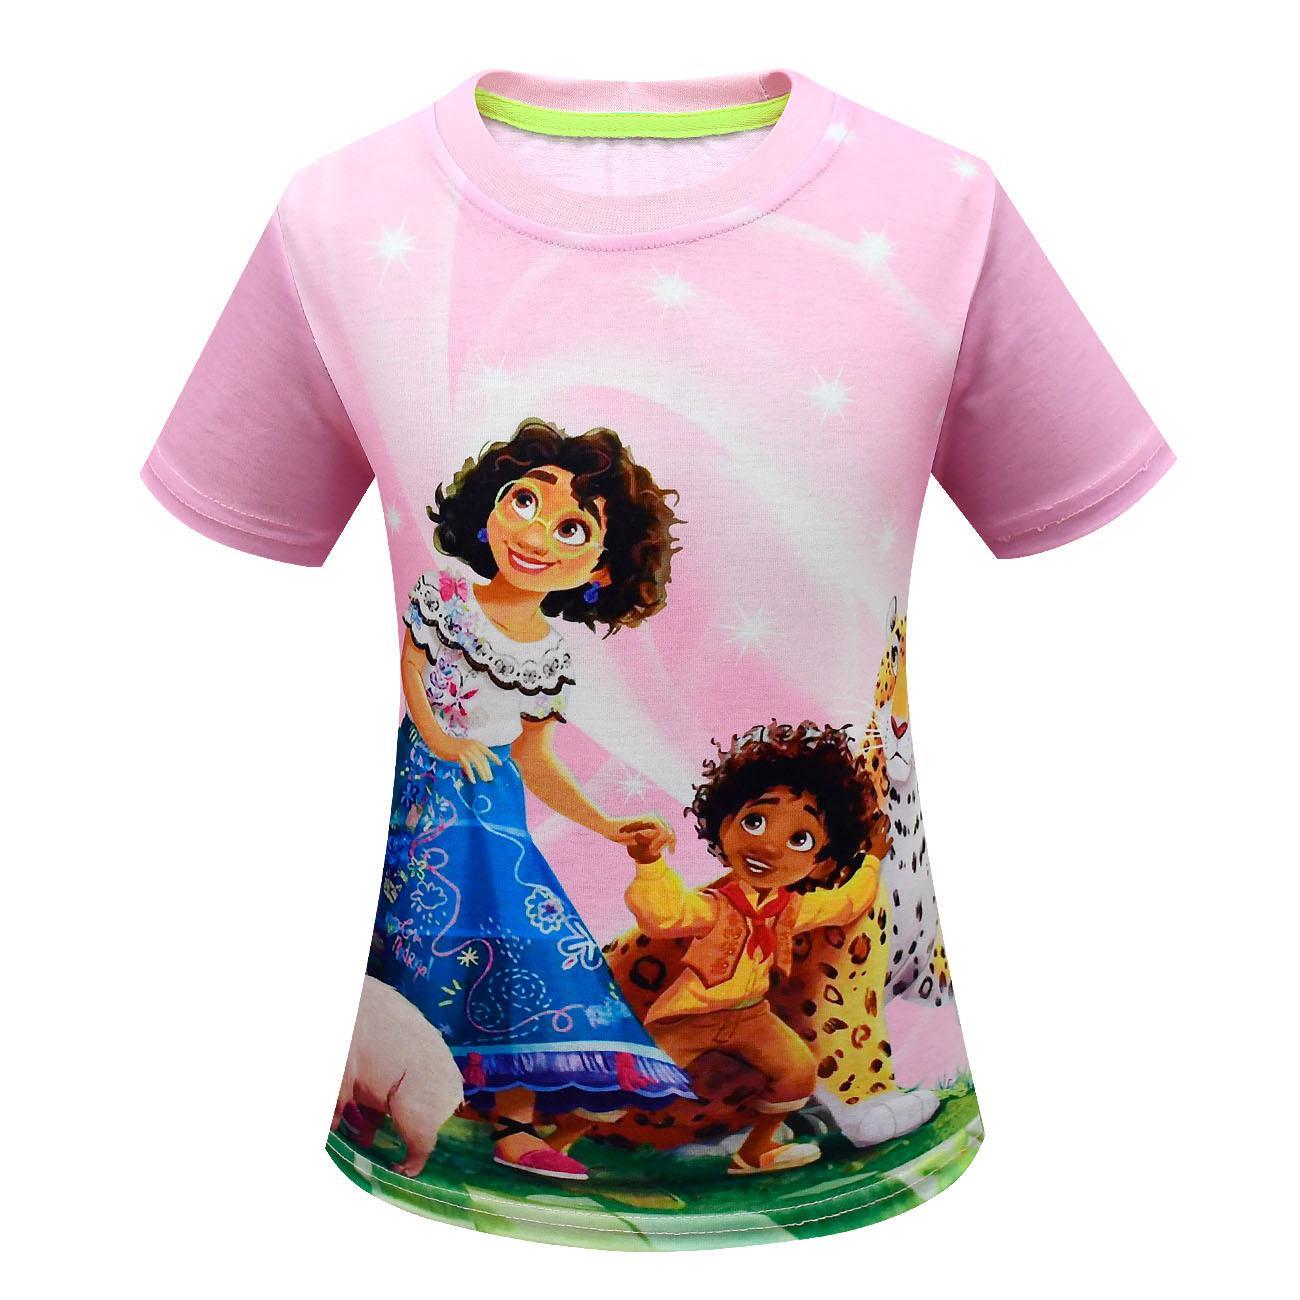 Vicanber Encanto Mirabel Printed T-Shirt Kids Girl Summer Tops Tee Shirts HOT(6-7Year)